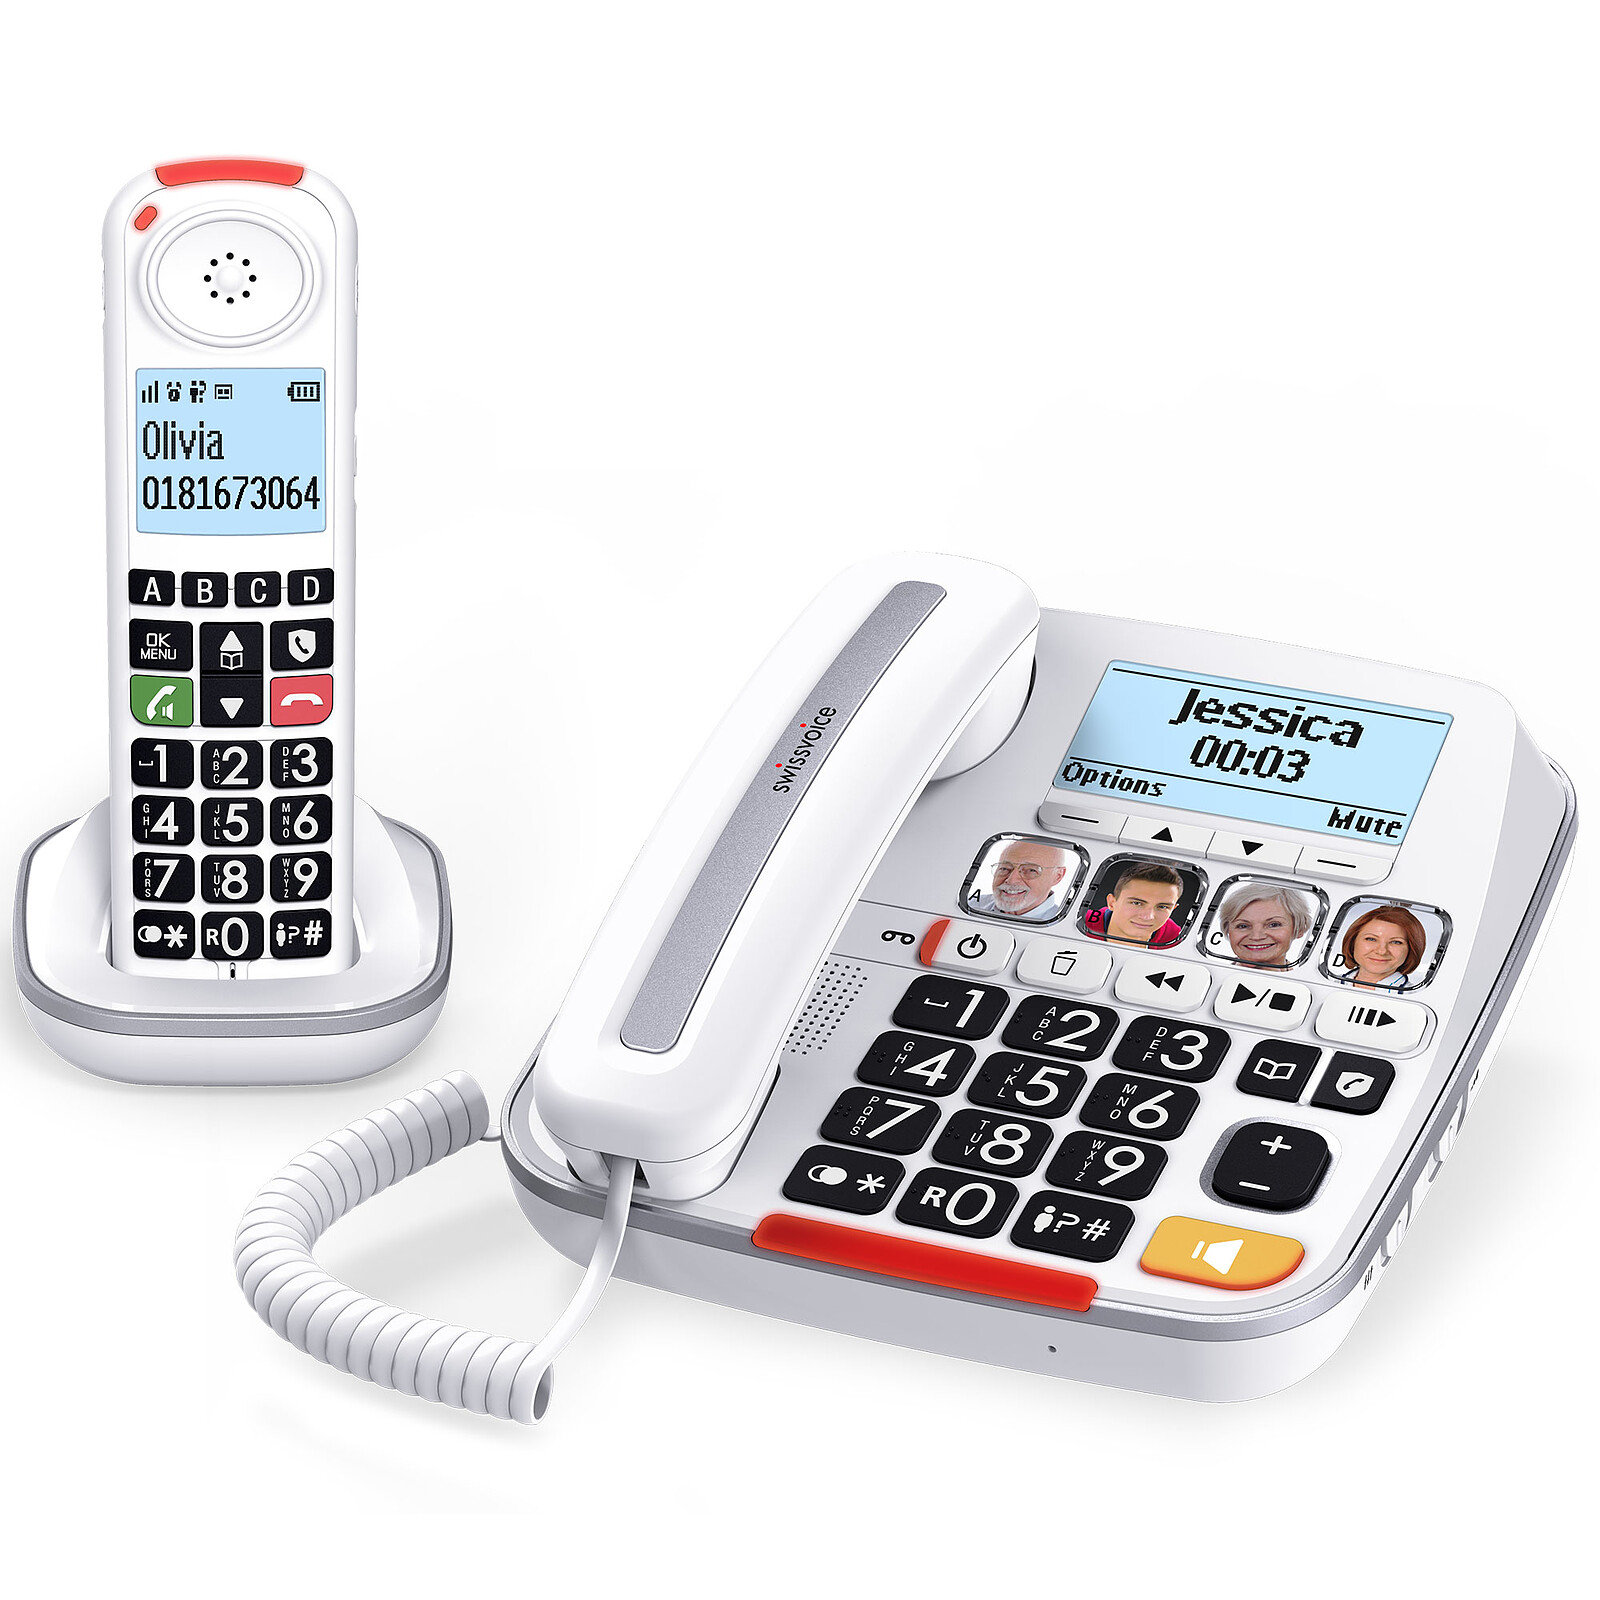 Téléphone fixe avec fil TMax Blanc ALCATEL : le téléphone fixe à